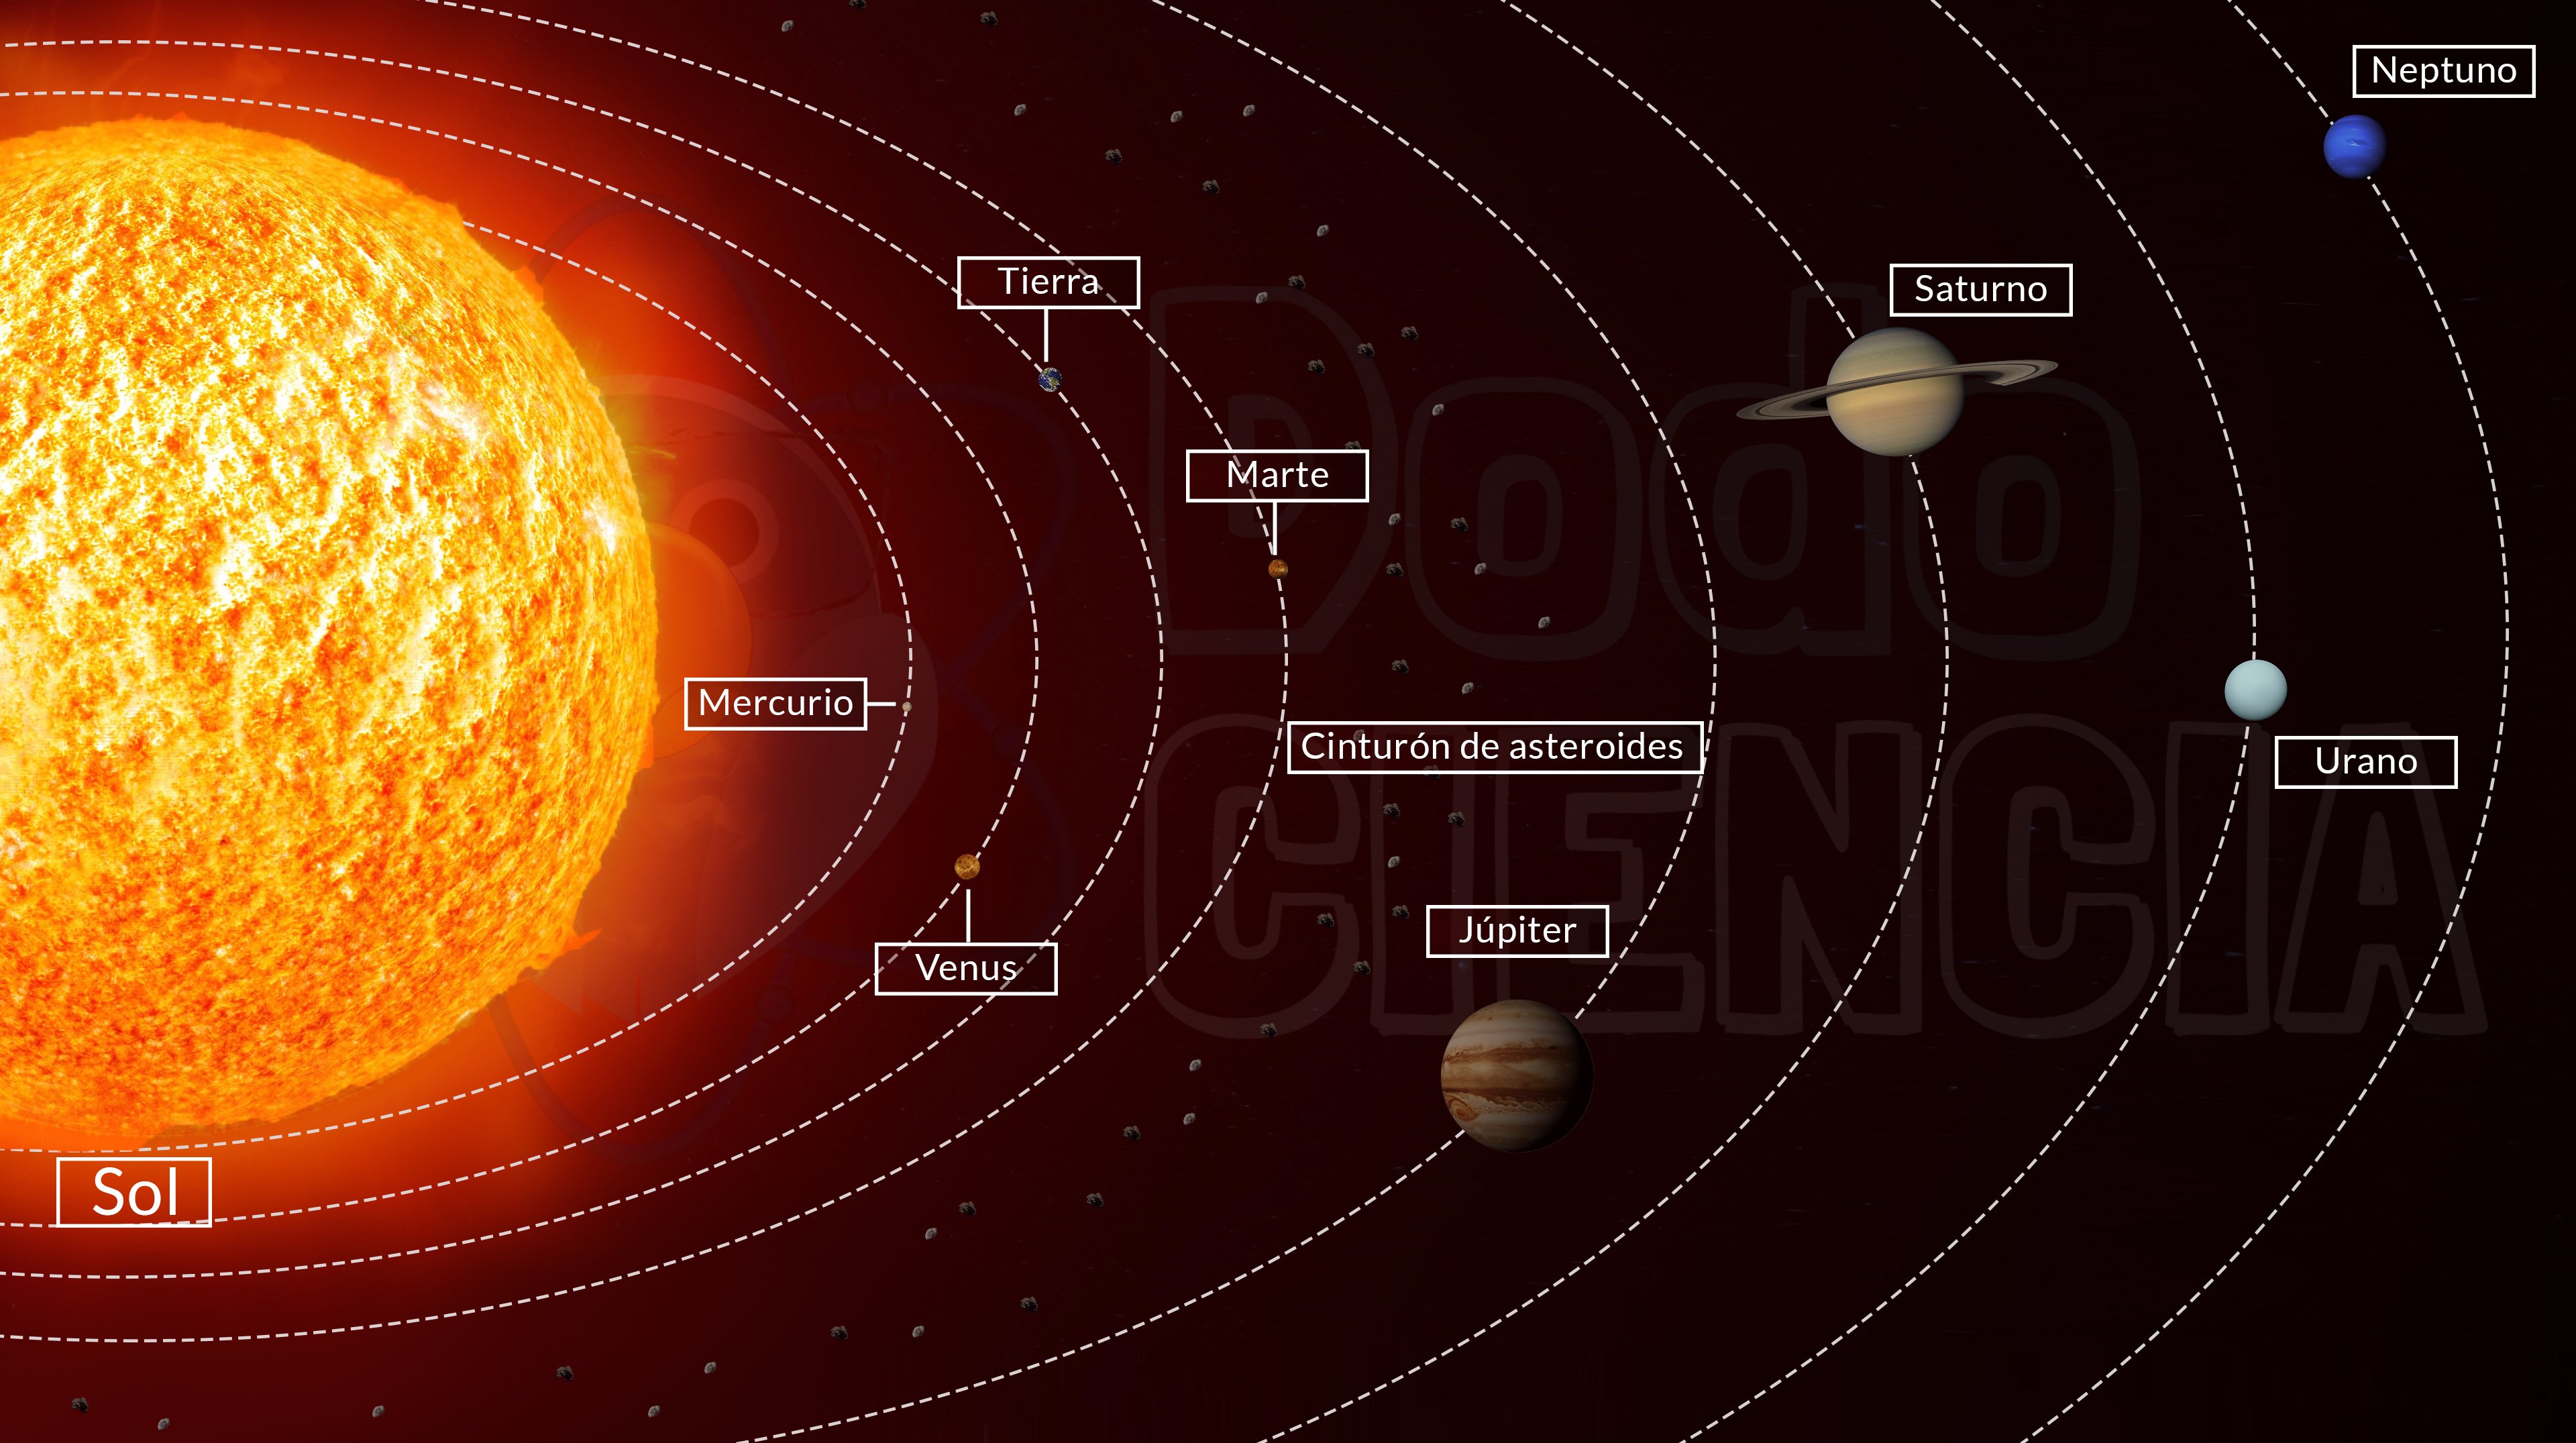 Imagen con los componentes del sistema solar donde se aprecian los planetas y sus órbitas elípticas alrededor del Sol